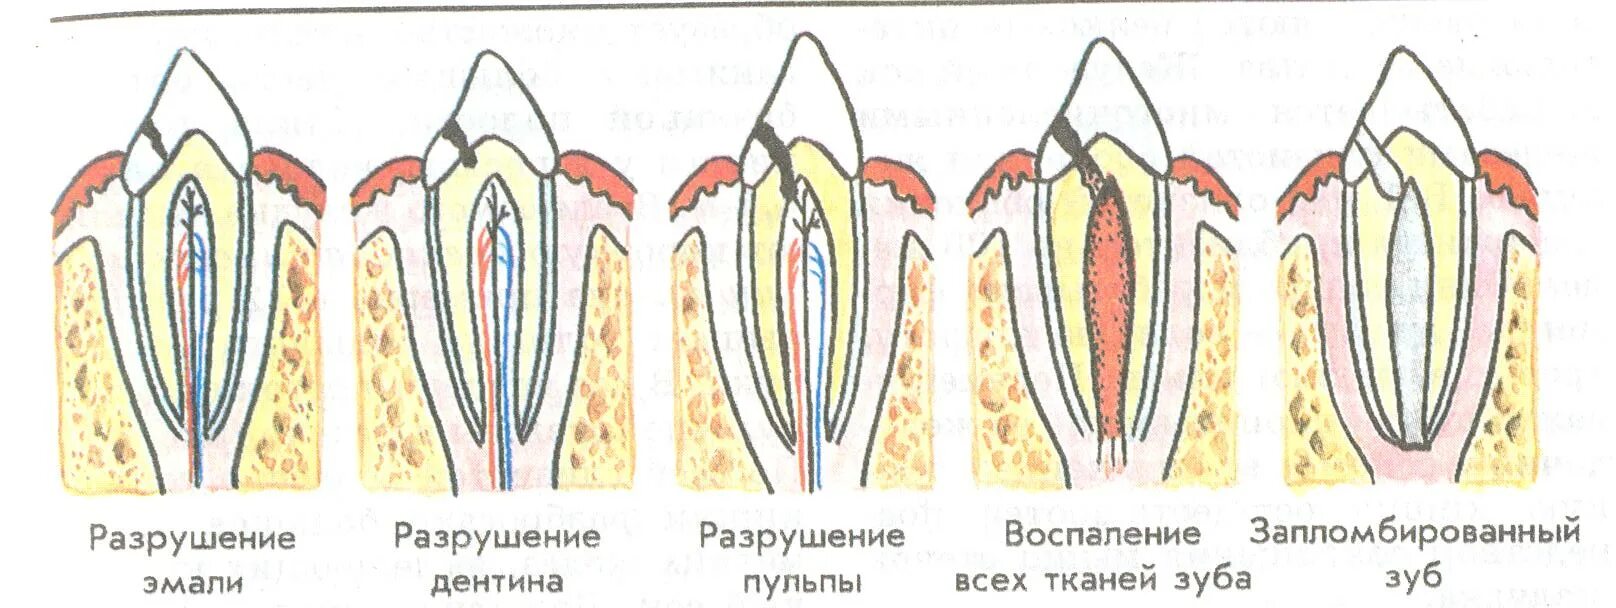 Разрушение ткани зуба